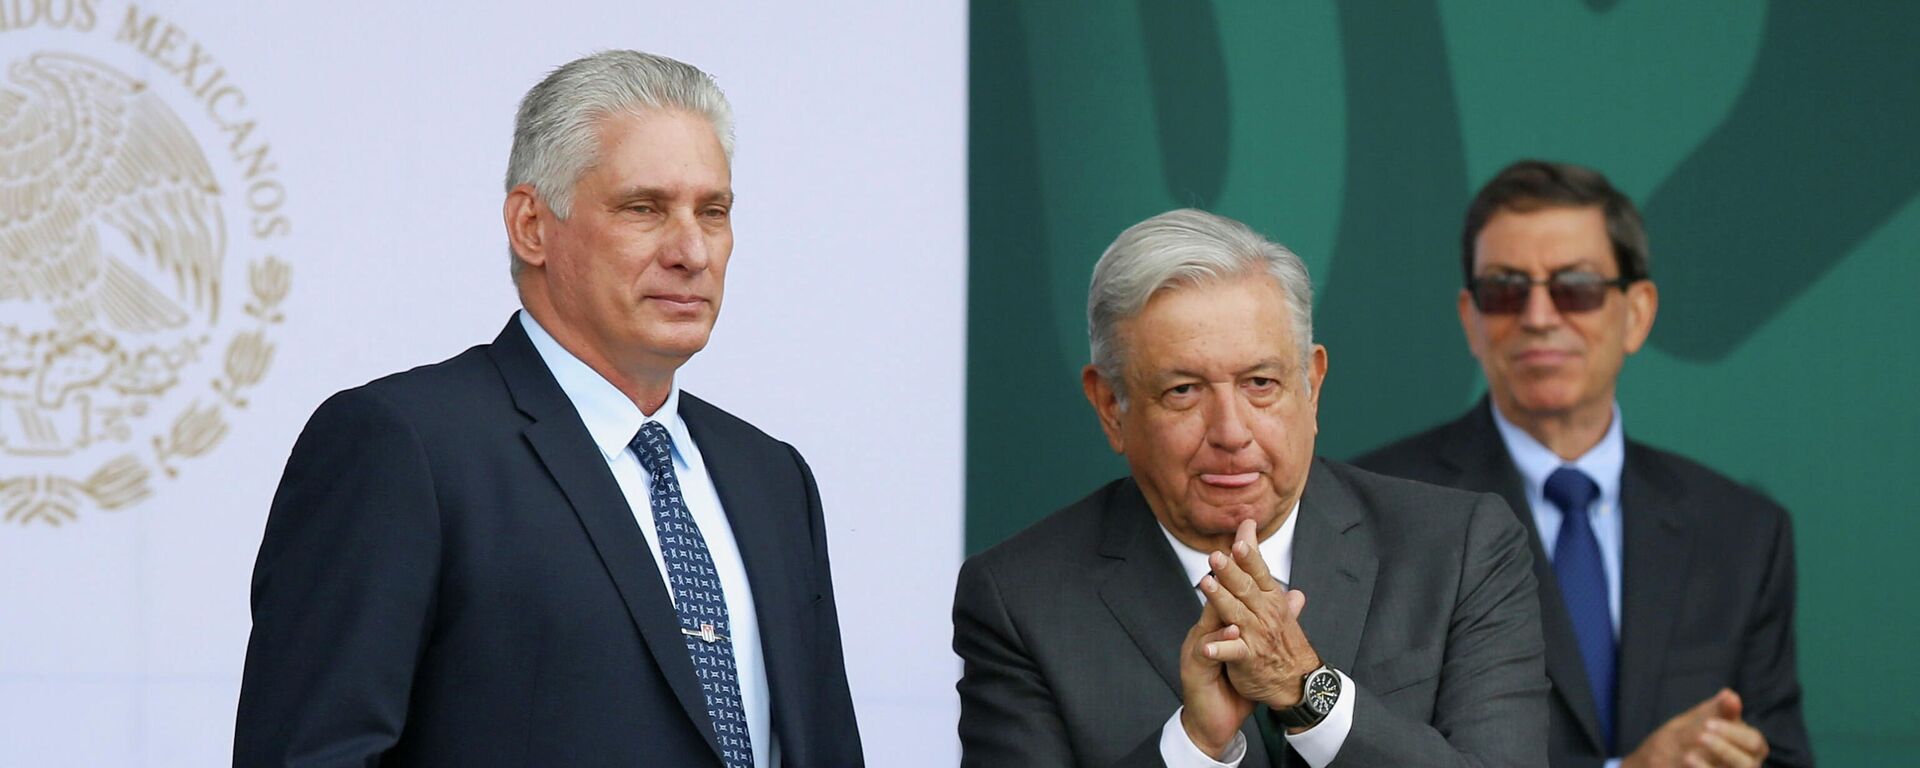 El presidente de Cuba, Miguel Díaz-Canel, junto al mandatario mexicano Andrés Manuel López Obrador - Sputnik Mundo, 1920, 17.09.2021